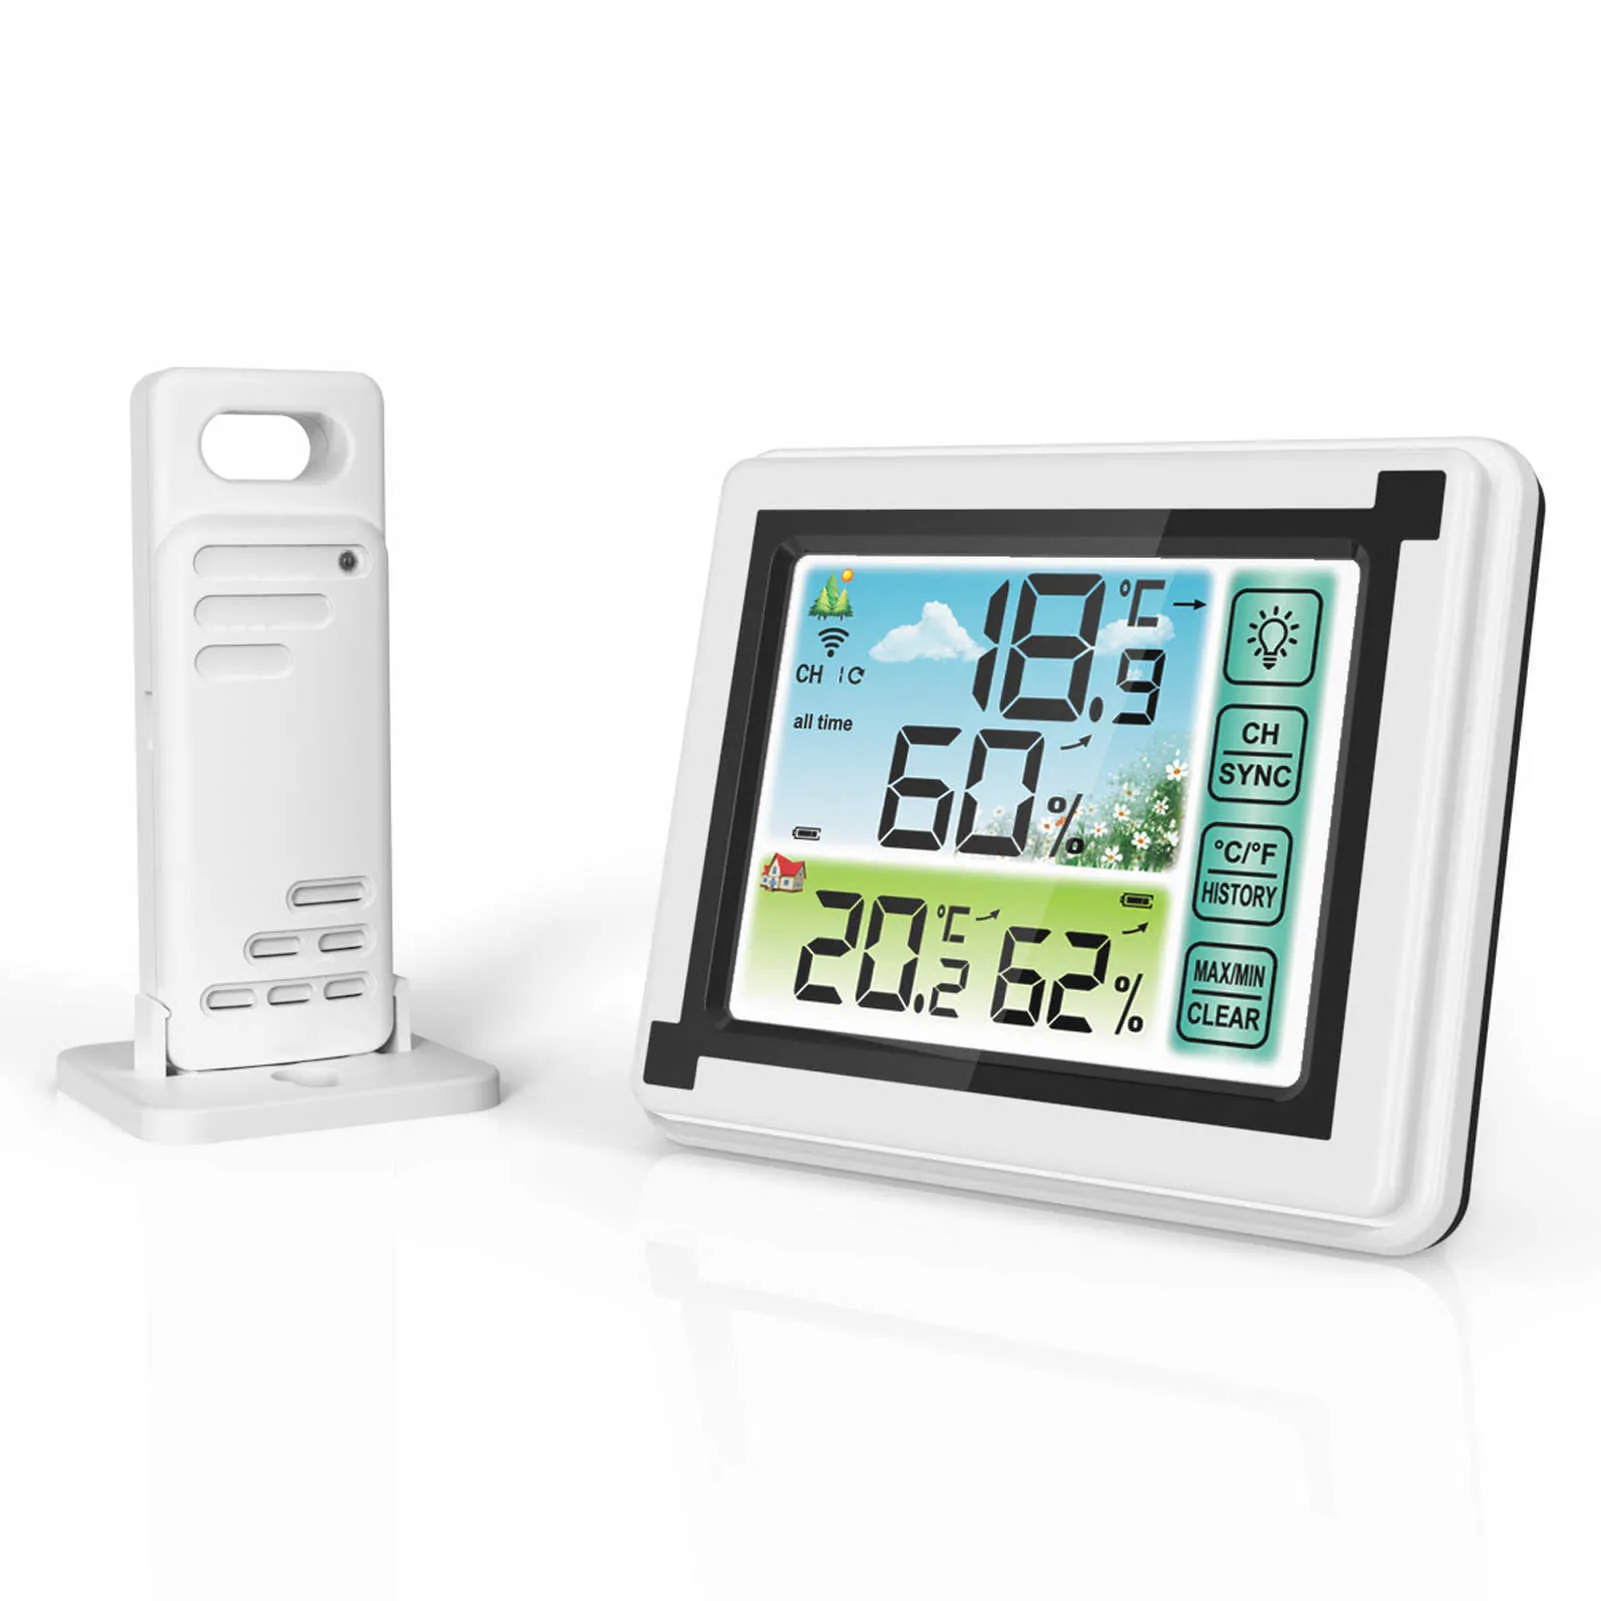 Väderstation Inomhus utomhus trådlös digital termohygrometer temperaturmätare luftfuktighetskärm Väderklocka Hygrometer 210719